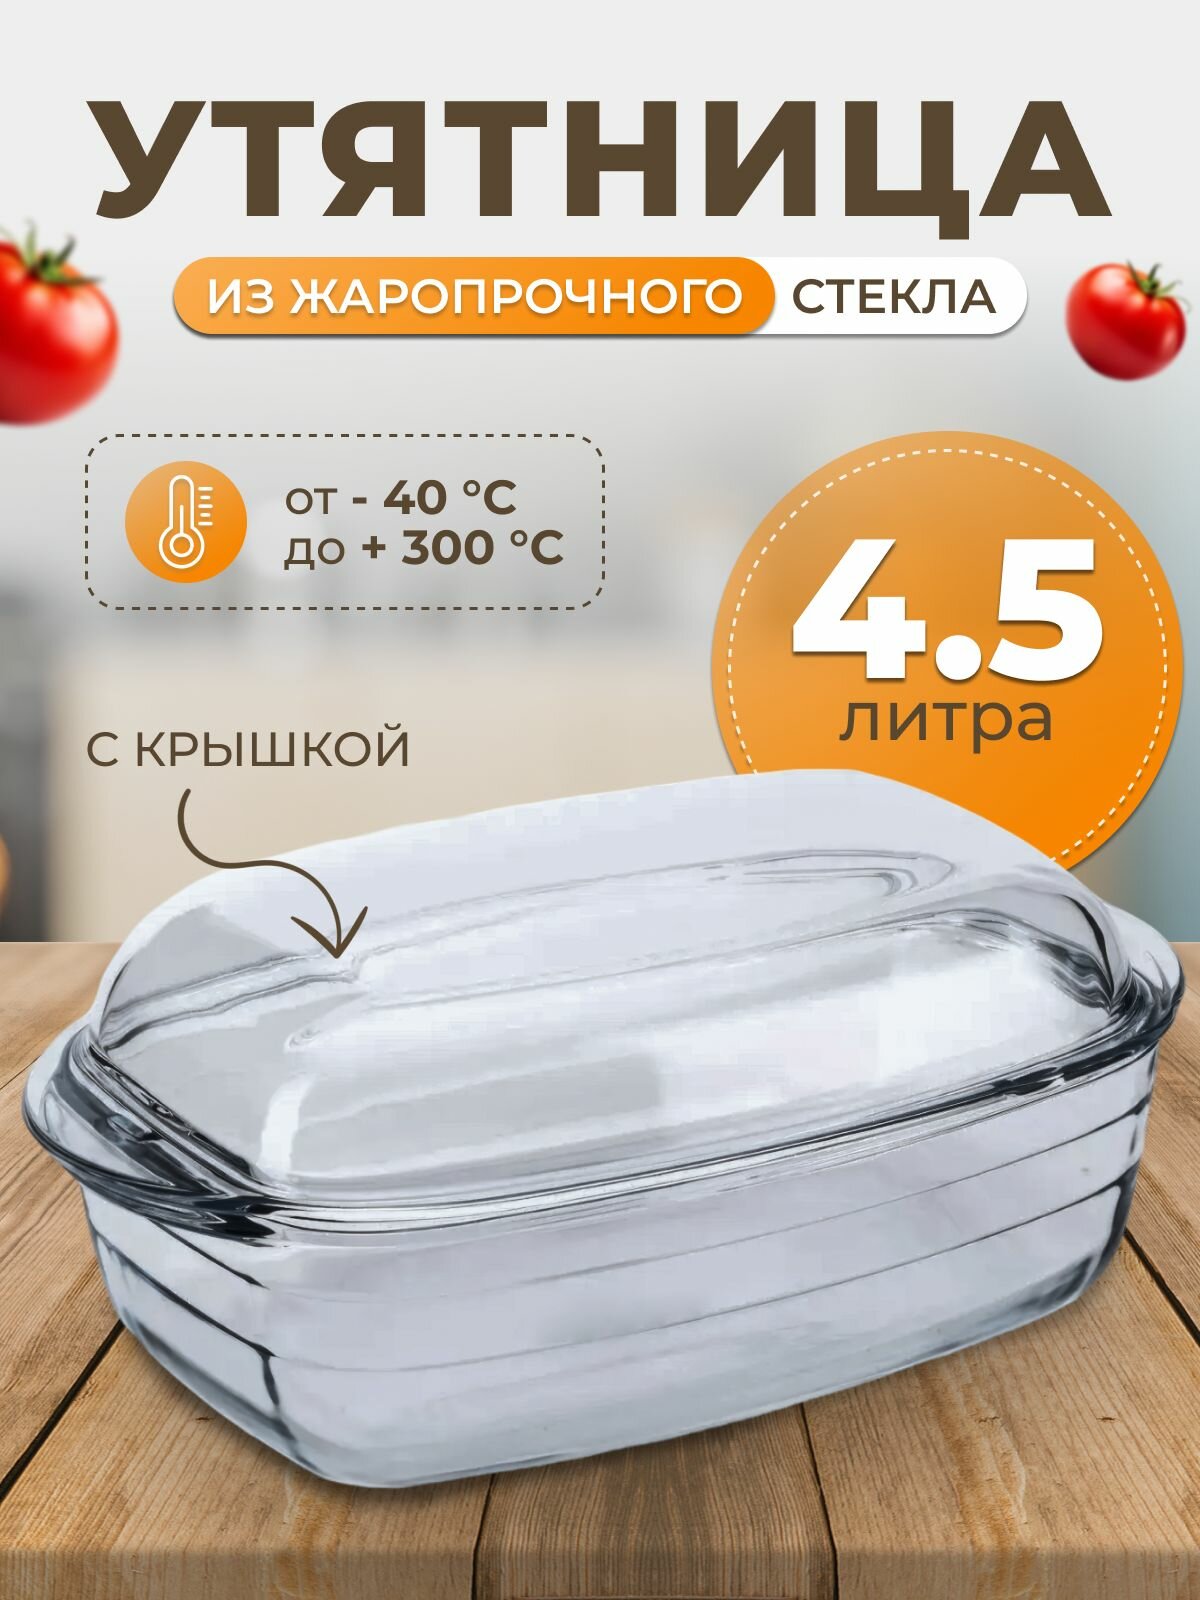 Утятница жаропрочная 4.5 л O Cuisine для запекания с крышкой - жаропрочная посуда O Cuisine для приготовления еды в духовом шкафу. Объем 45 литра